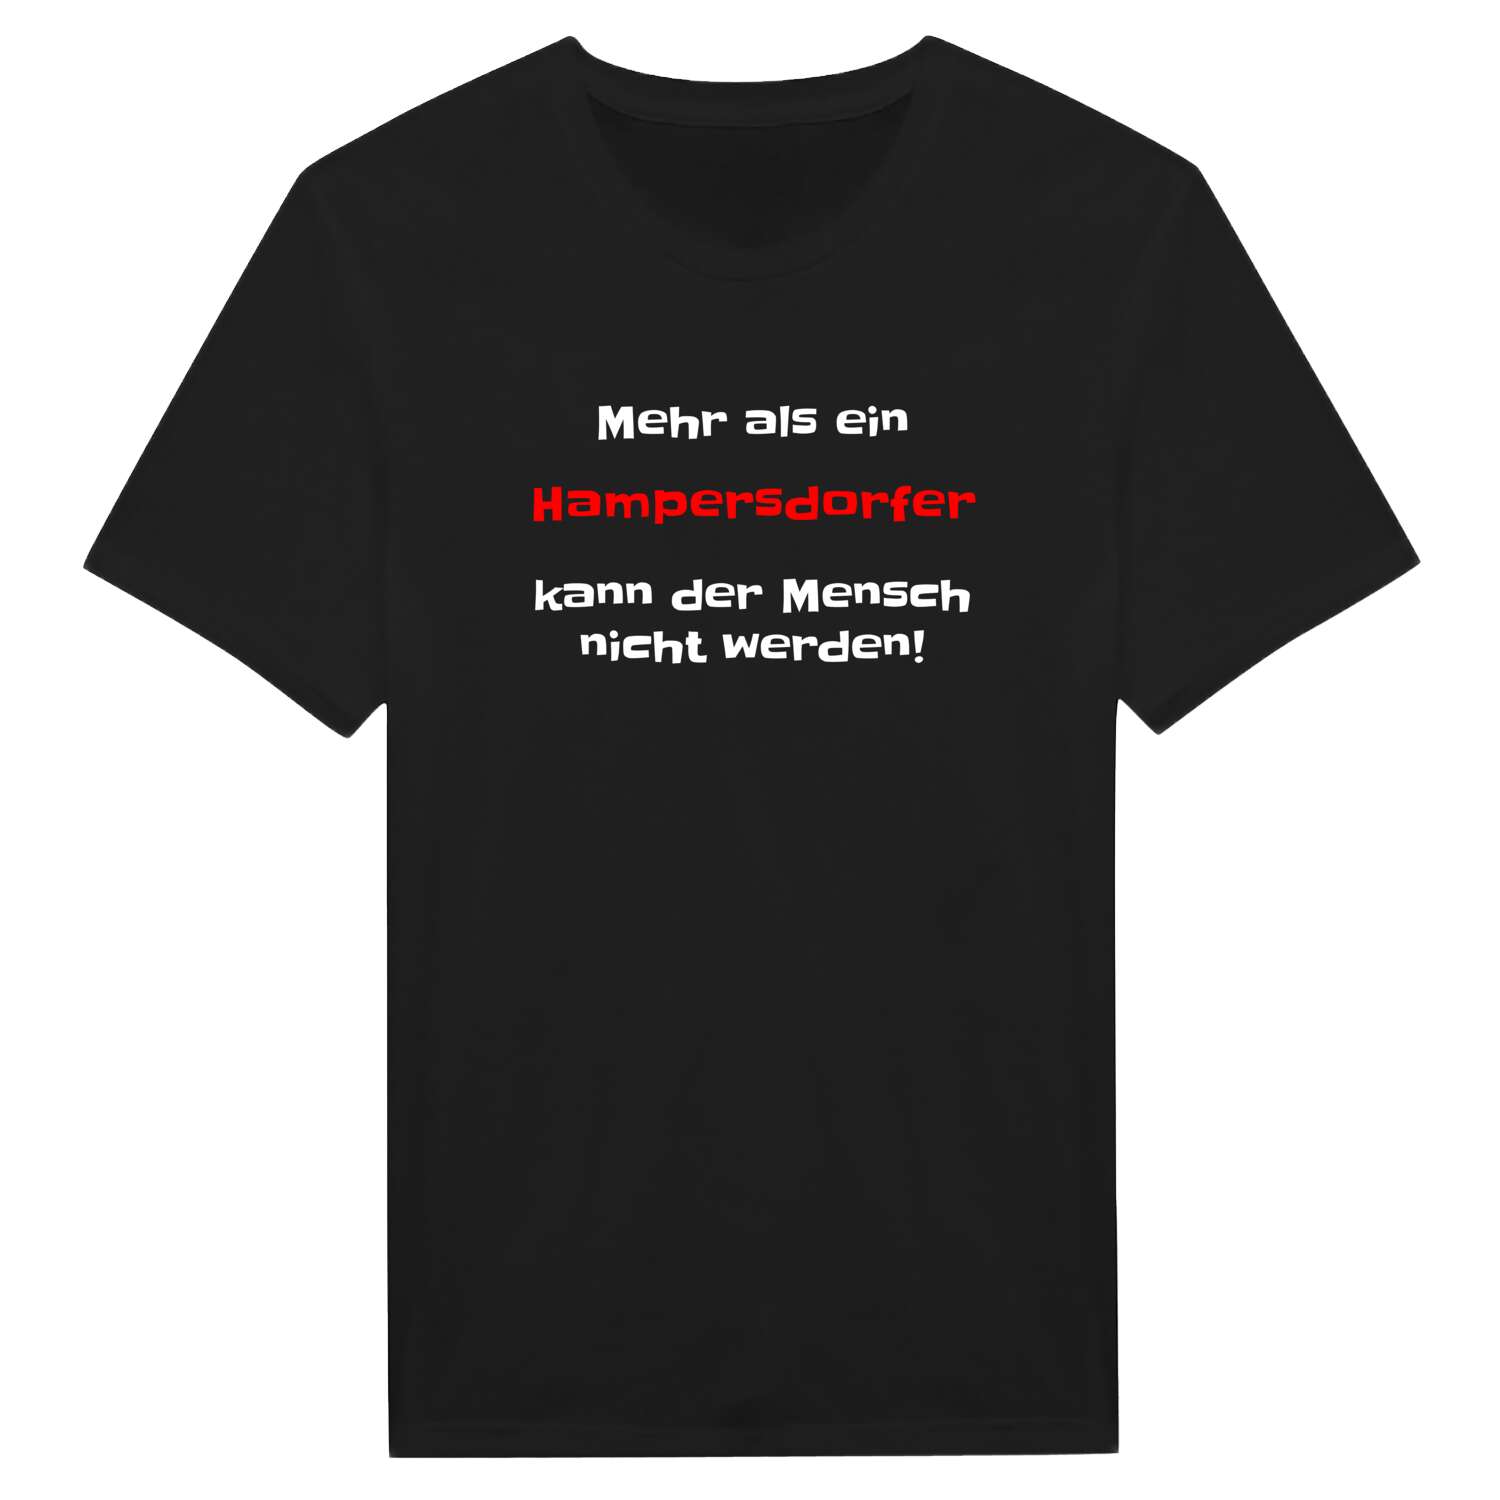 Hampersdorf T-Shirt »Mehr als ein«